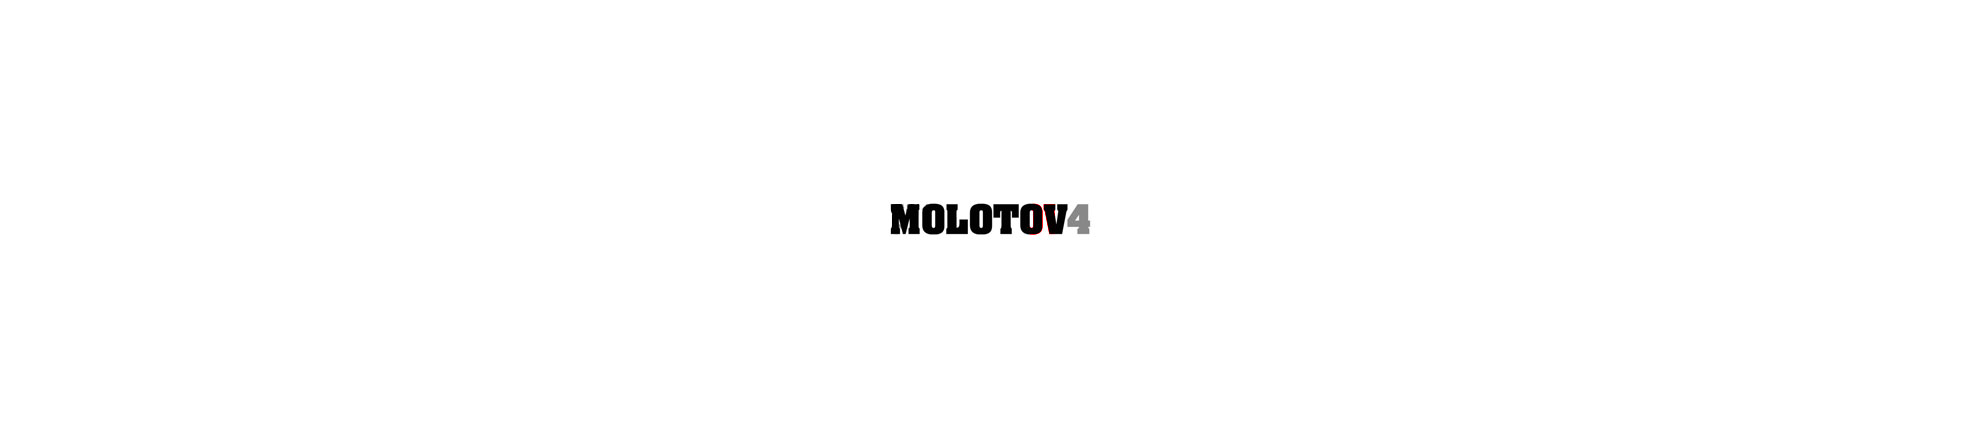 molotov-2